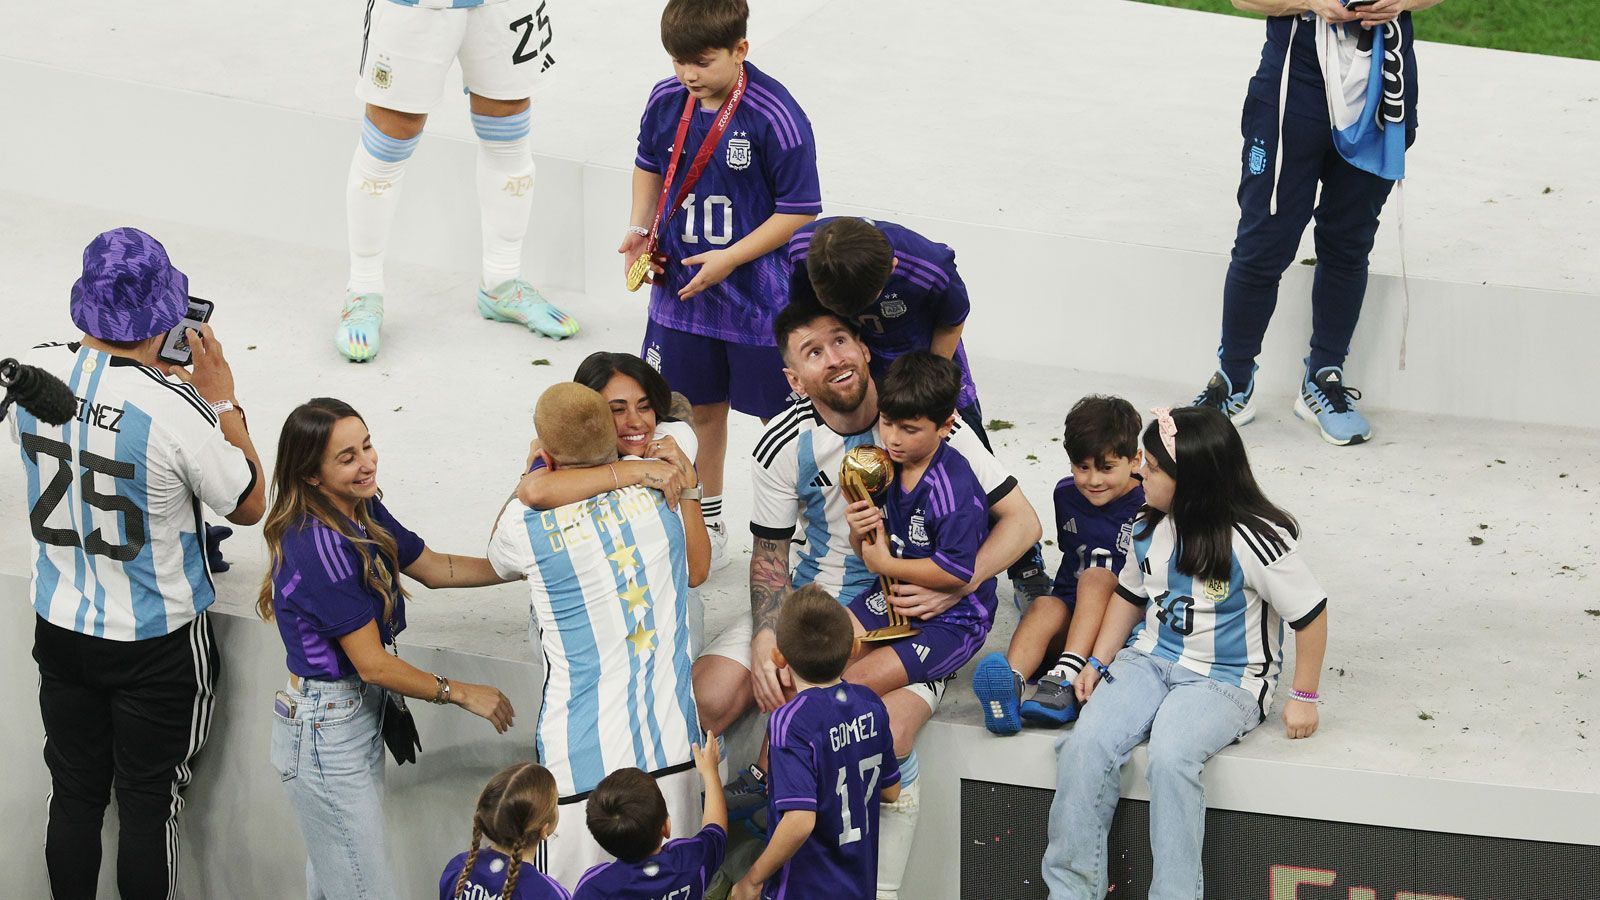 
                <strong>Weitere internationale Pressestimmen</strong><br>
                Guardian (Großbritannien): "Lionel Messi hat seine Siegermedaille und die Last der Welt wird sichtlich von seinen Schultern genommen. Er lächelt, strahlt wie ein kleiner Junge, einfach ein glücklicher Kerl. Was eine Vorstellung! Was eine Karriere! Was ein Finale."Blick (Schweiz): "Ein Endspiel für die Ewigkeit. Argentinien gewinnt ein Finale für die Geschichtsbücher hochdramatisch im Elfmeterschießen und ist zum dritten Mal Weltmeister."Gazzetta dello Sport (Italien): "Argentinien ist Weltmeister, Messi wie Maradona. Frankreich geht im Elfmeterschießen k.o."Corriere della Sera (Italien): "Argentinien ist Weltmeister. Es ist die WM von Leo, aber Ehre für Mbappe."RMC Sport (Frankreich): "Messi und die Albiceleste auf dem Dach der Welt trotz heldenhafter Franzosen und eines Dreierpacks von Mbappe."Le Figaro (Frankreich): "Besiegt durch die Albiceleste von Lionel Messi lassen die Blauen ihren WM-Titel entwischen."New York Times (USA): "Krönung komplett! Lionel Messi holt sich die Krone"Marca (Spanien): "Messi, jetzt hast du deinen Pokal. Du hast ihn verdient."
              